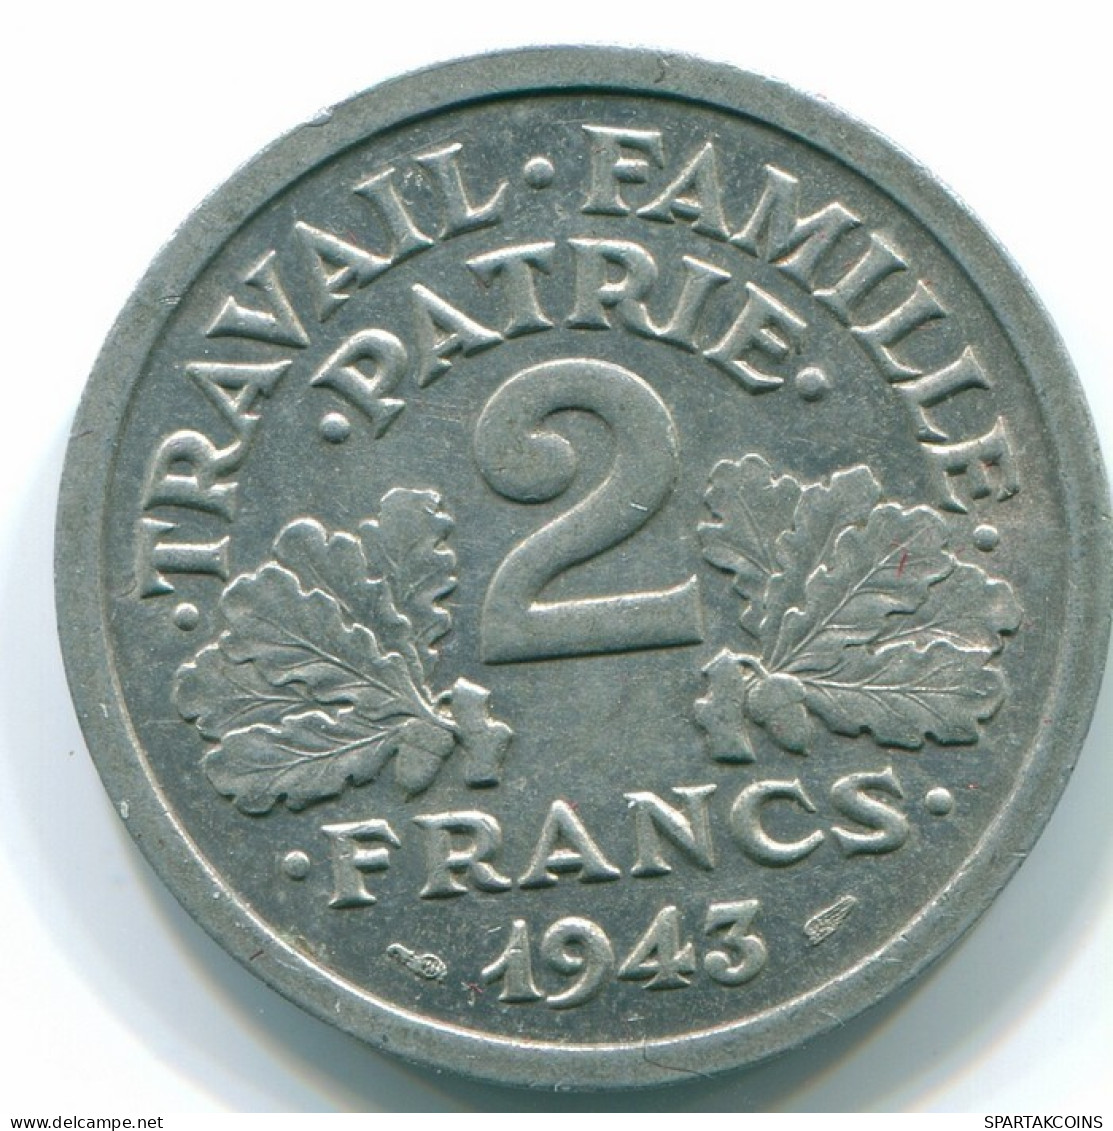 2 FRANCS 1943 FRANCE Coin AUNC #FR1085.7.U.A - 2 Francs